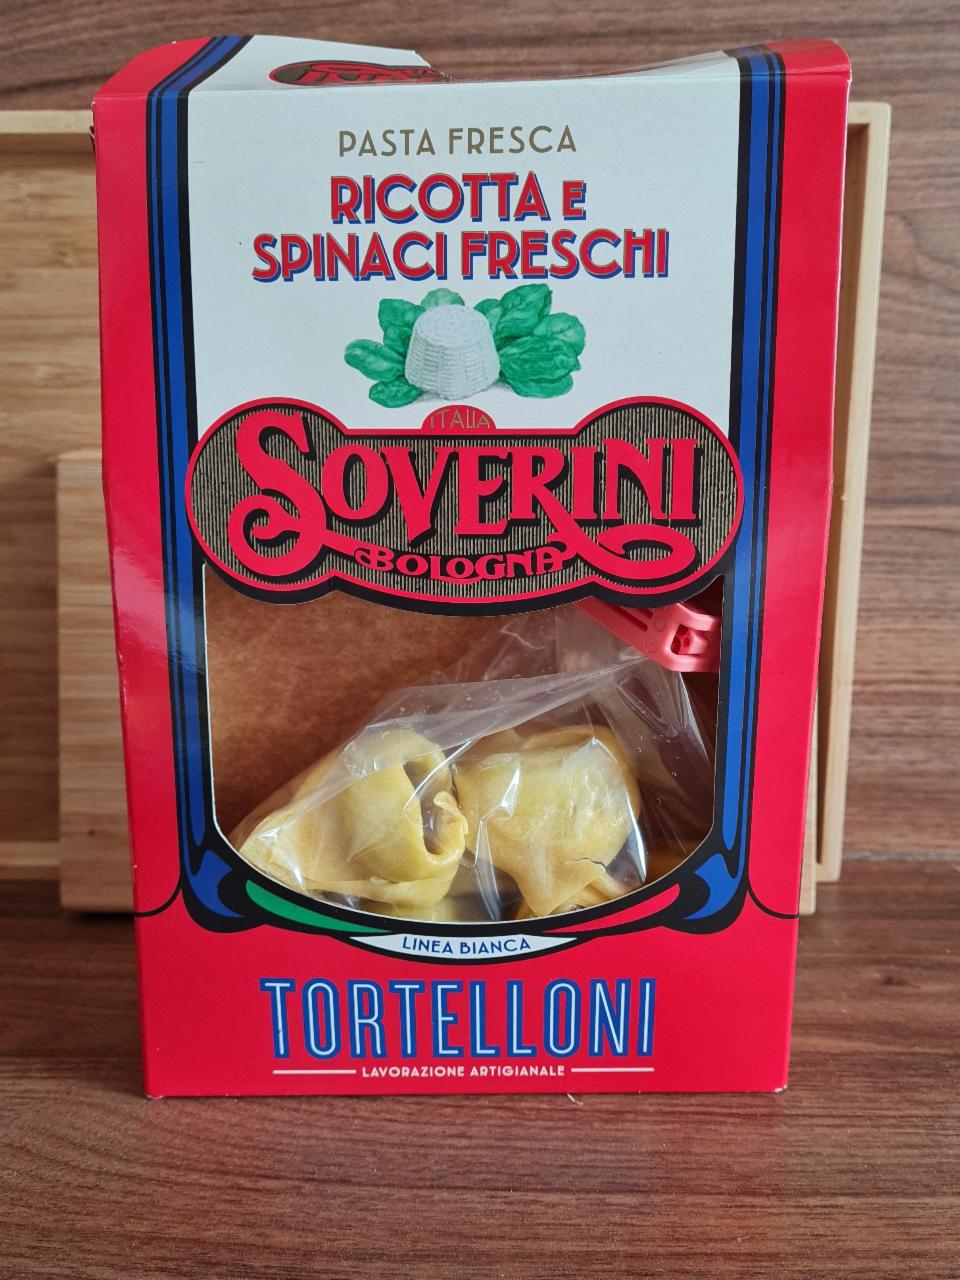 Fotografie - Tortelloni pasta fresca ricotta e spinaci freschi